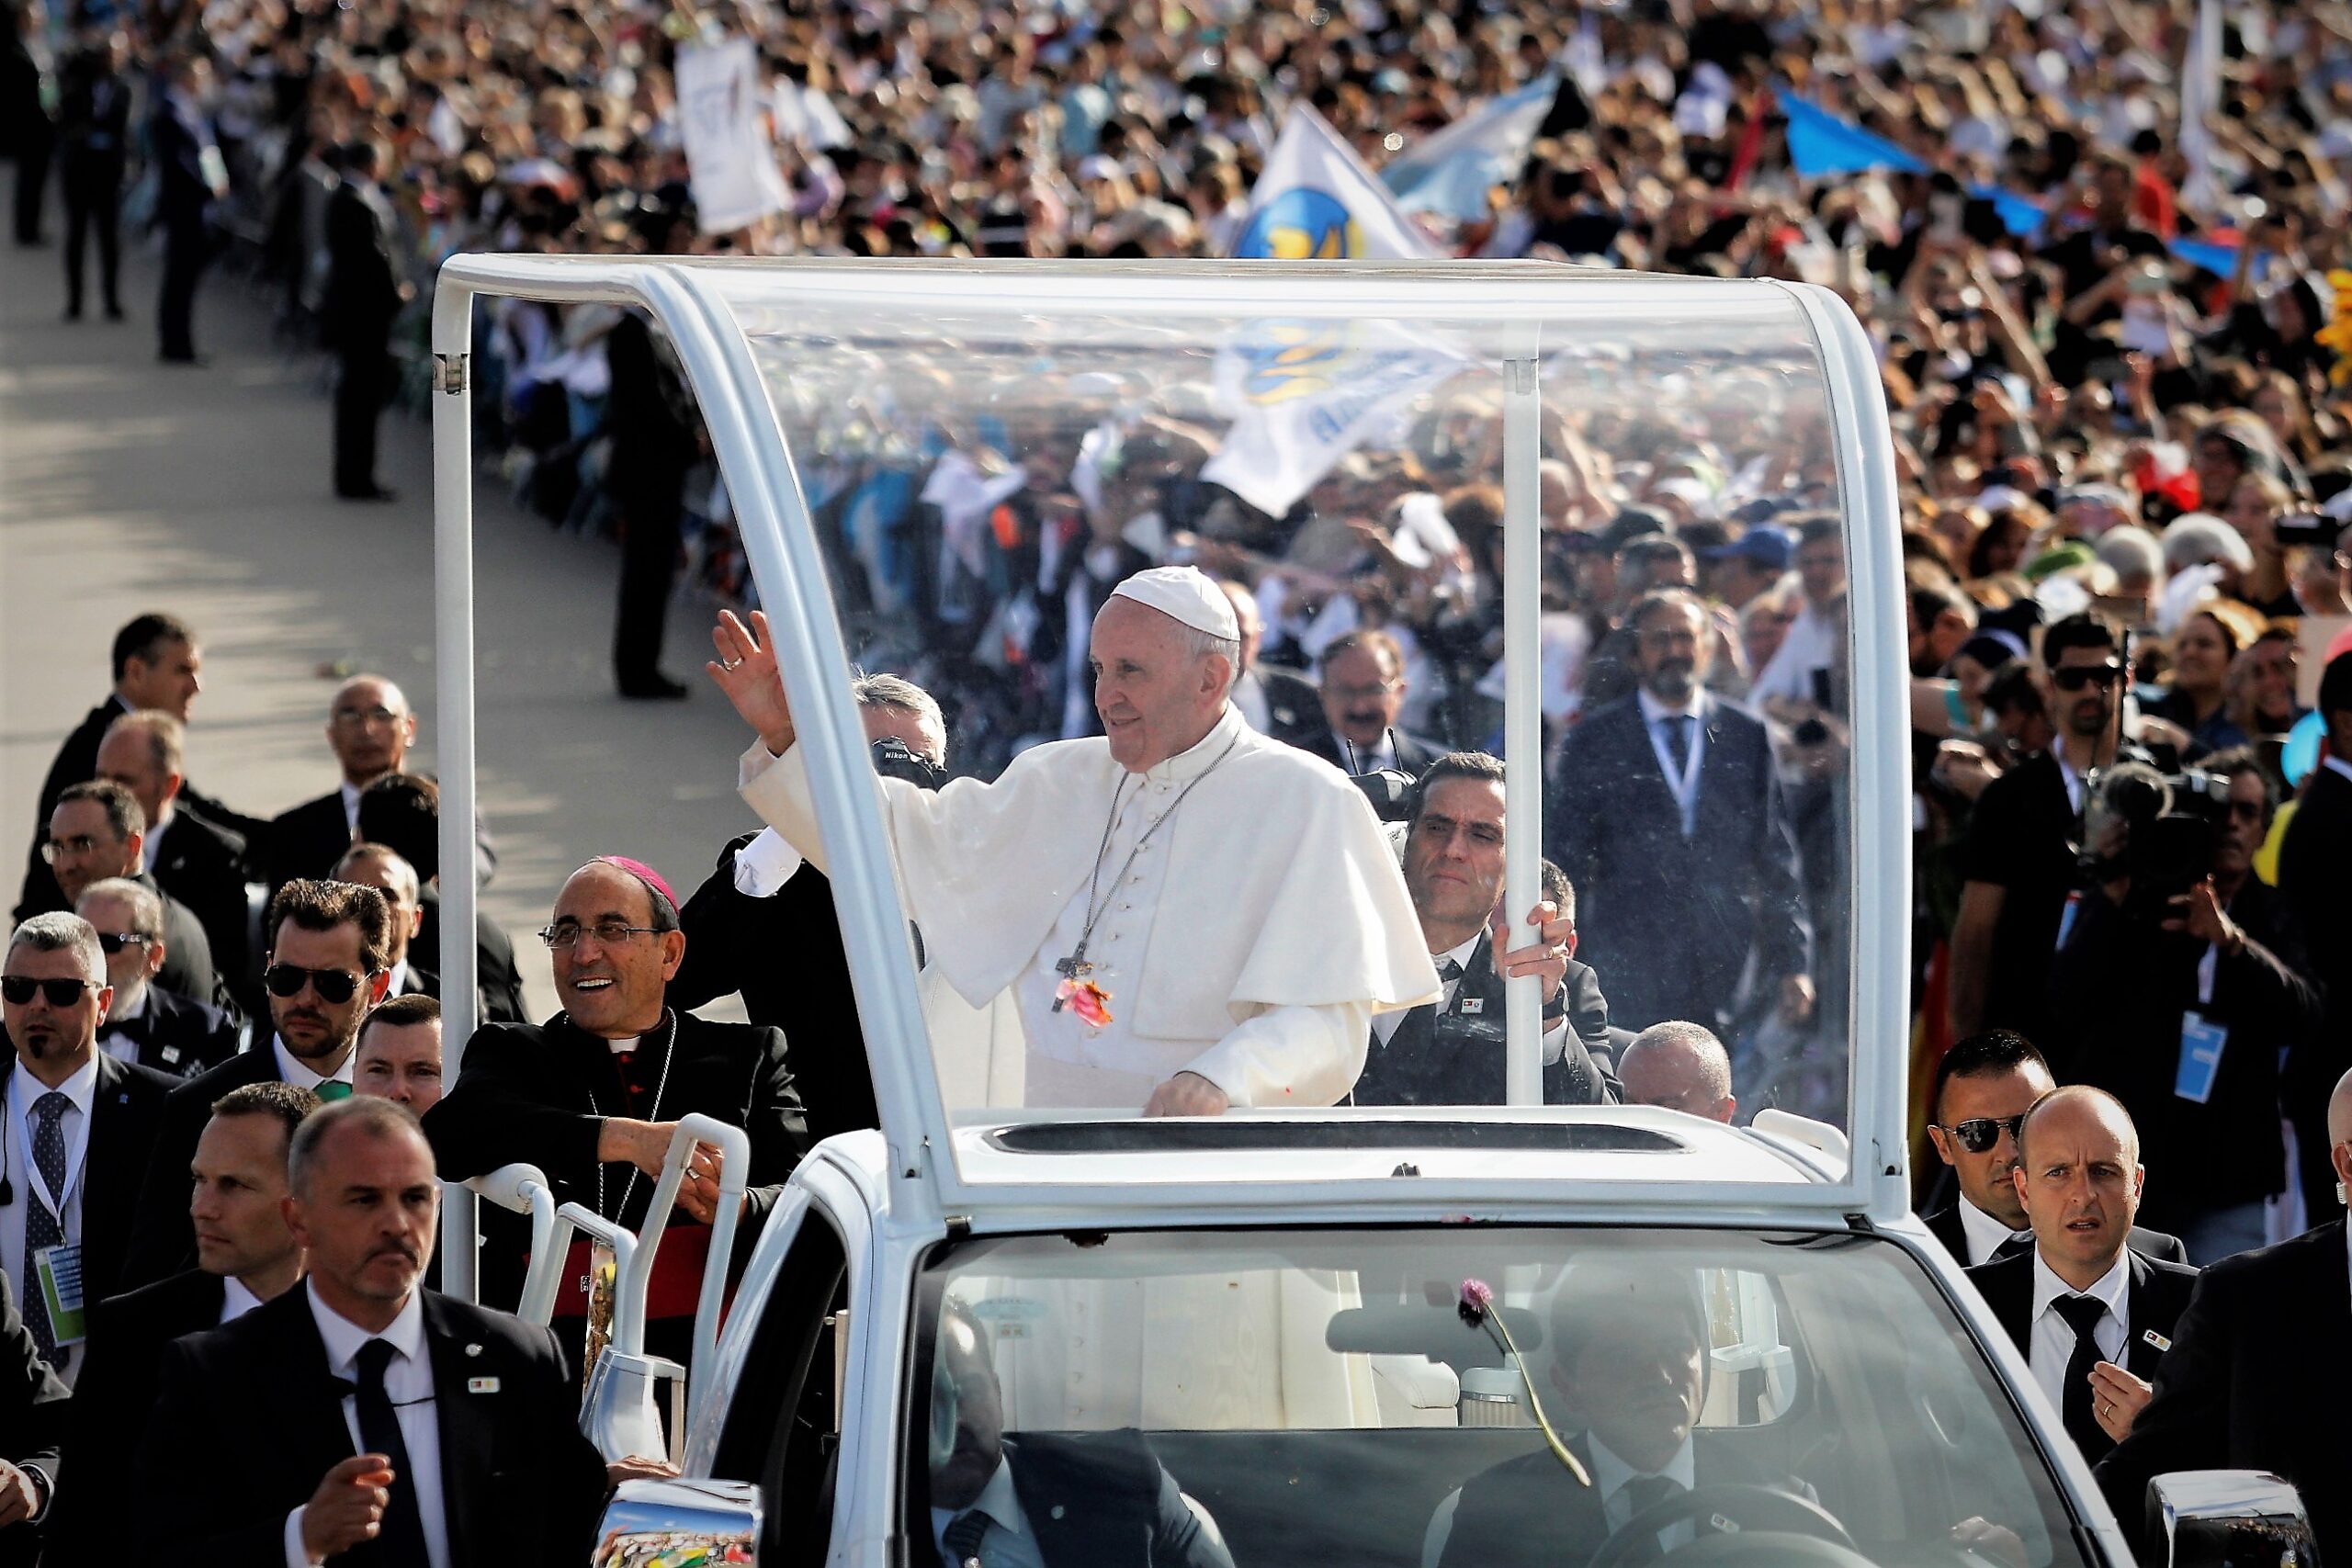 Papa reza o terço em Fátima com 112 jovens deficientes e reclusos